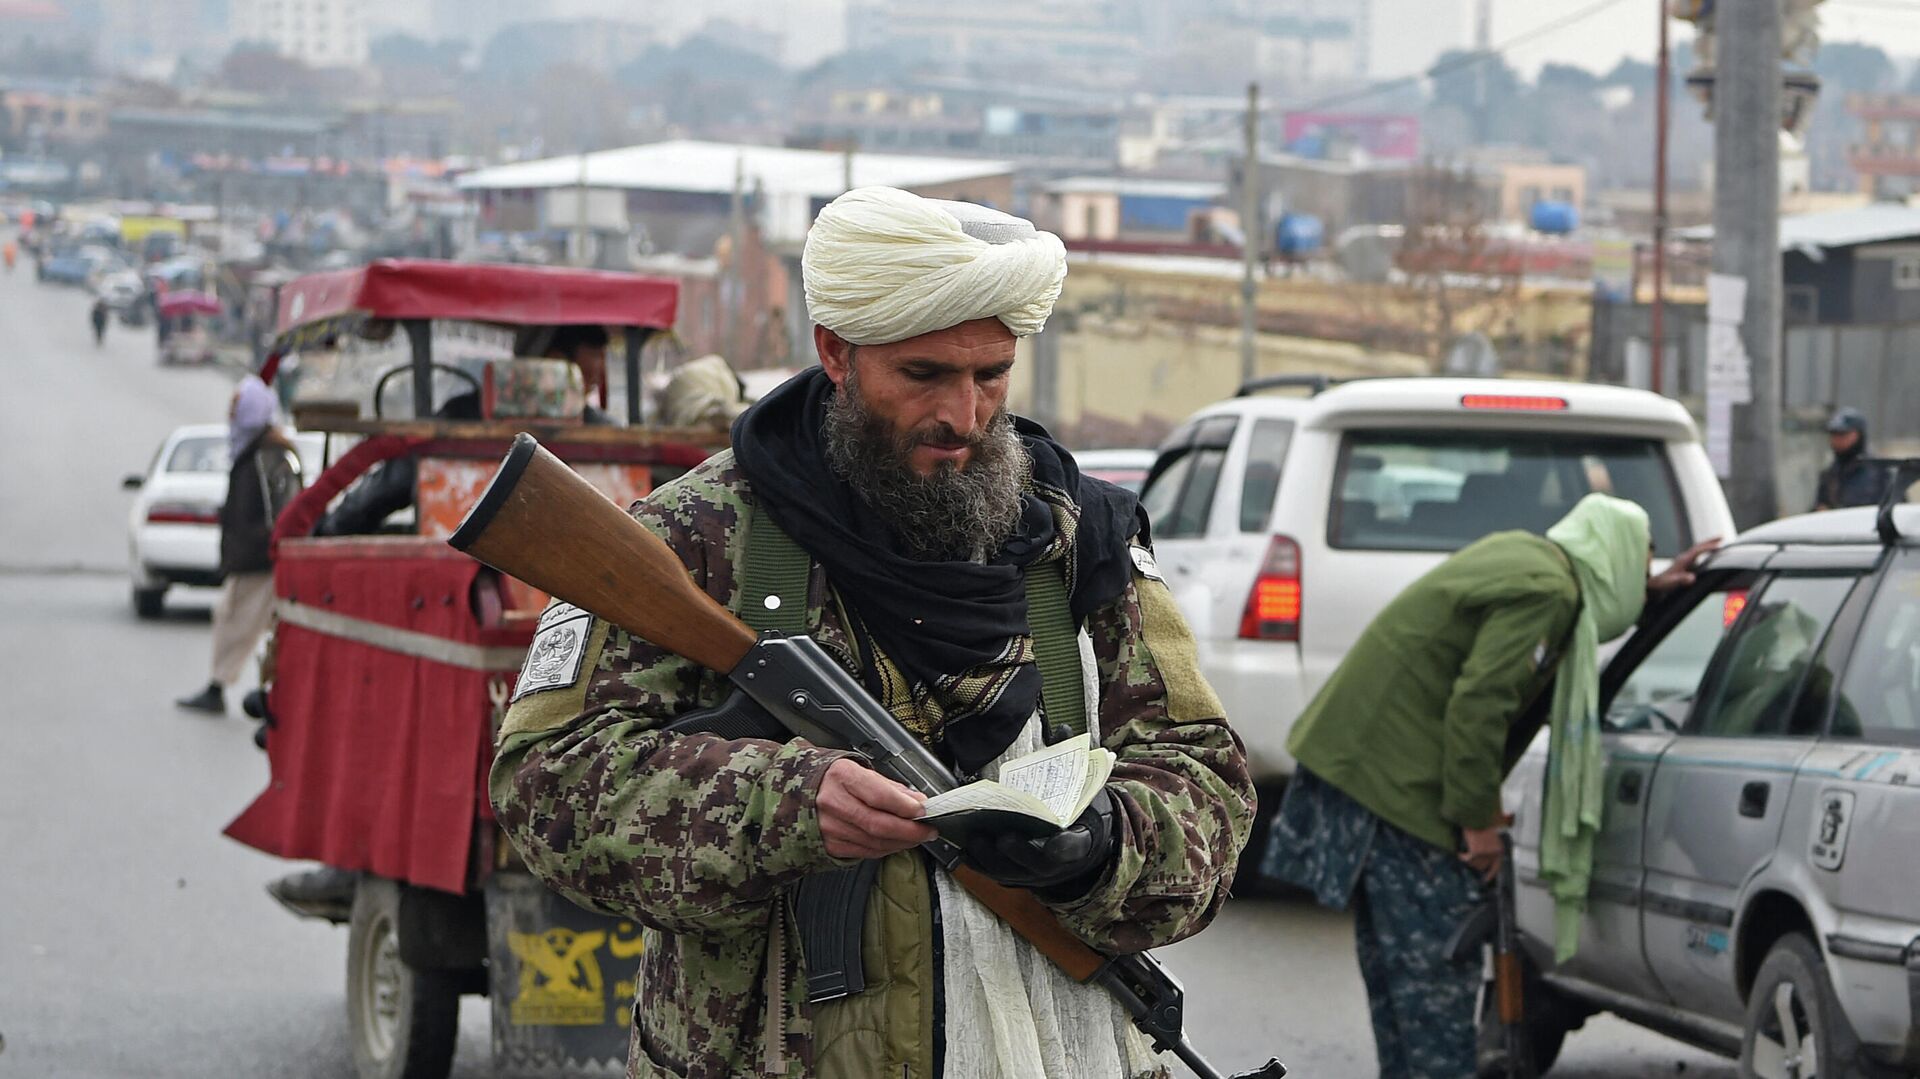 Член Талибана проверяет документ автомобилиста на блокпосту в Кабуле 23 декабря 2021 года. - Sputnik Азербайджан, 1920, 29.12.2021